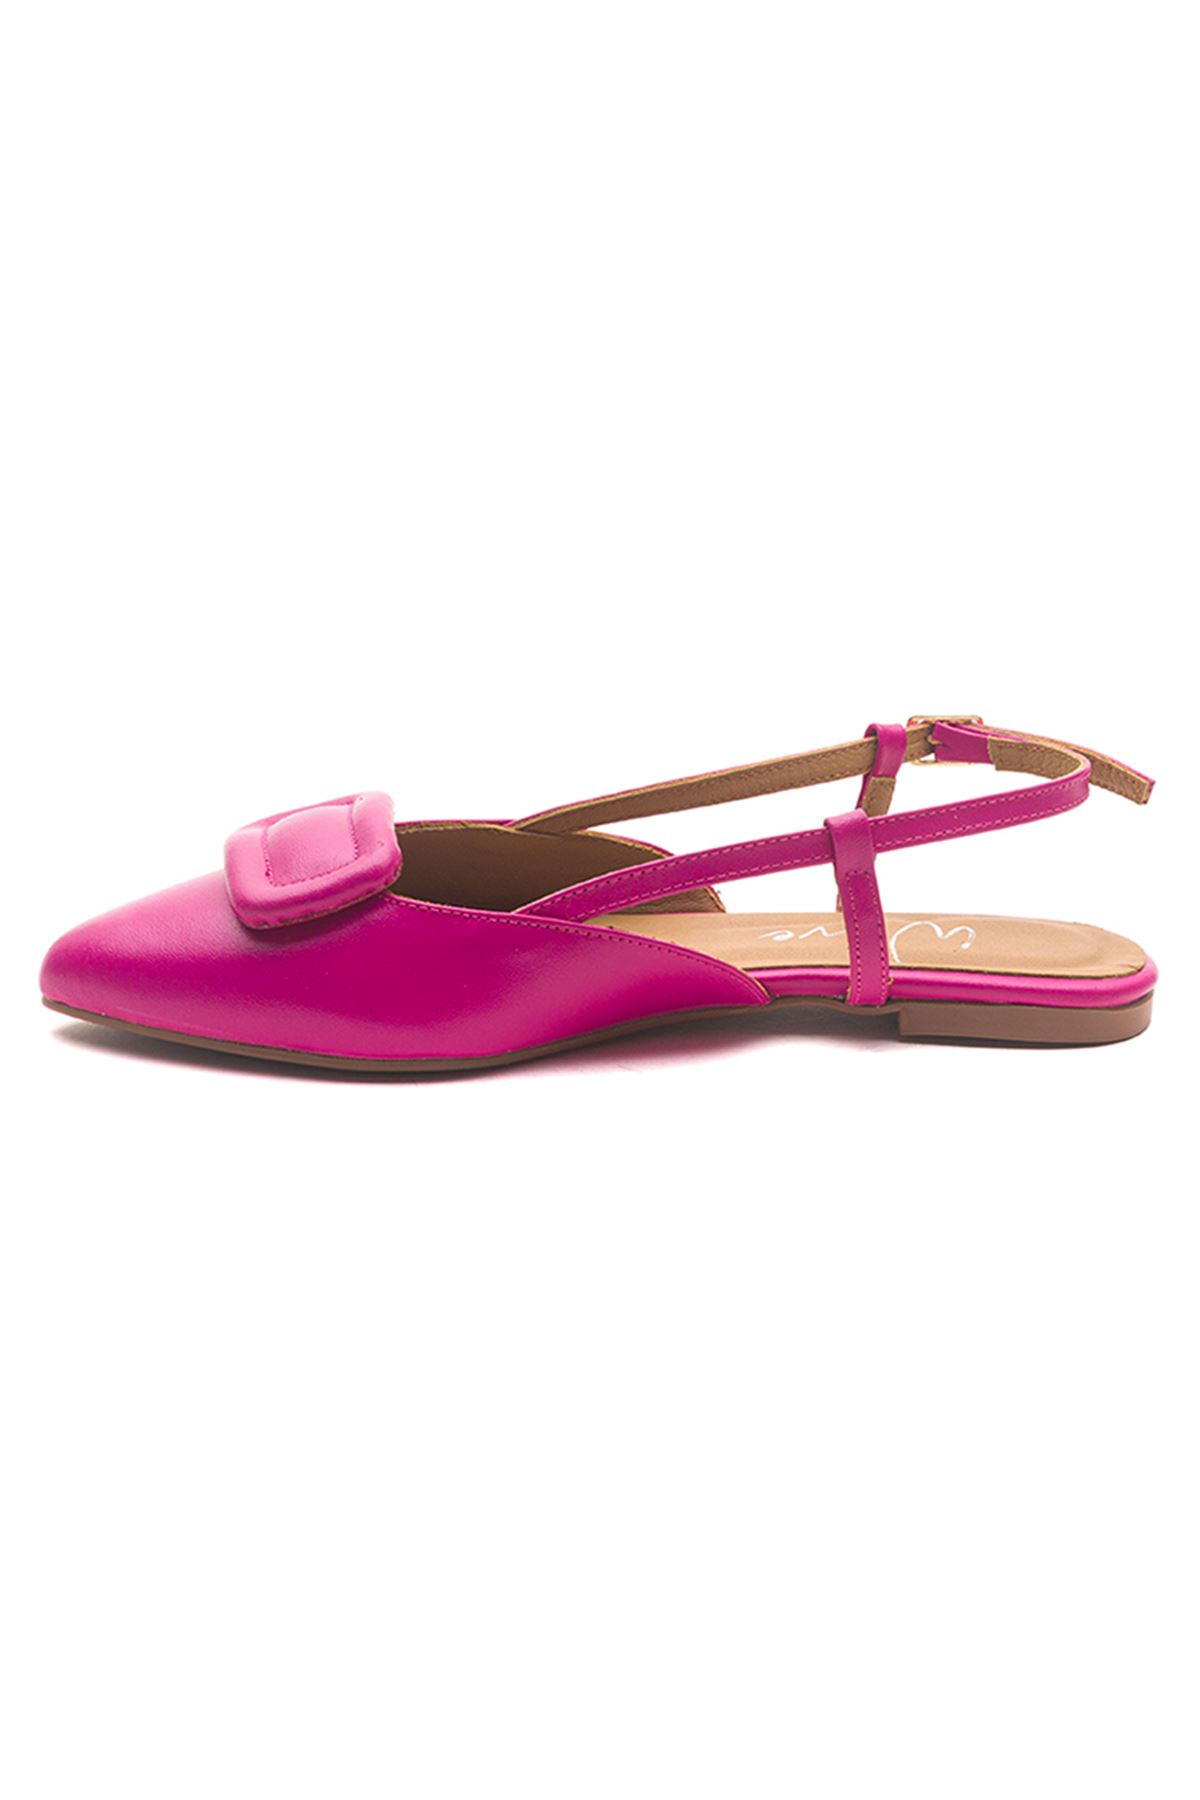 Wave Shoes Hakiki Deri Babet Bilekten Tokalı Ayakkabı Pembe Renk Yazlık Kadın Sandalet 23203 